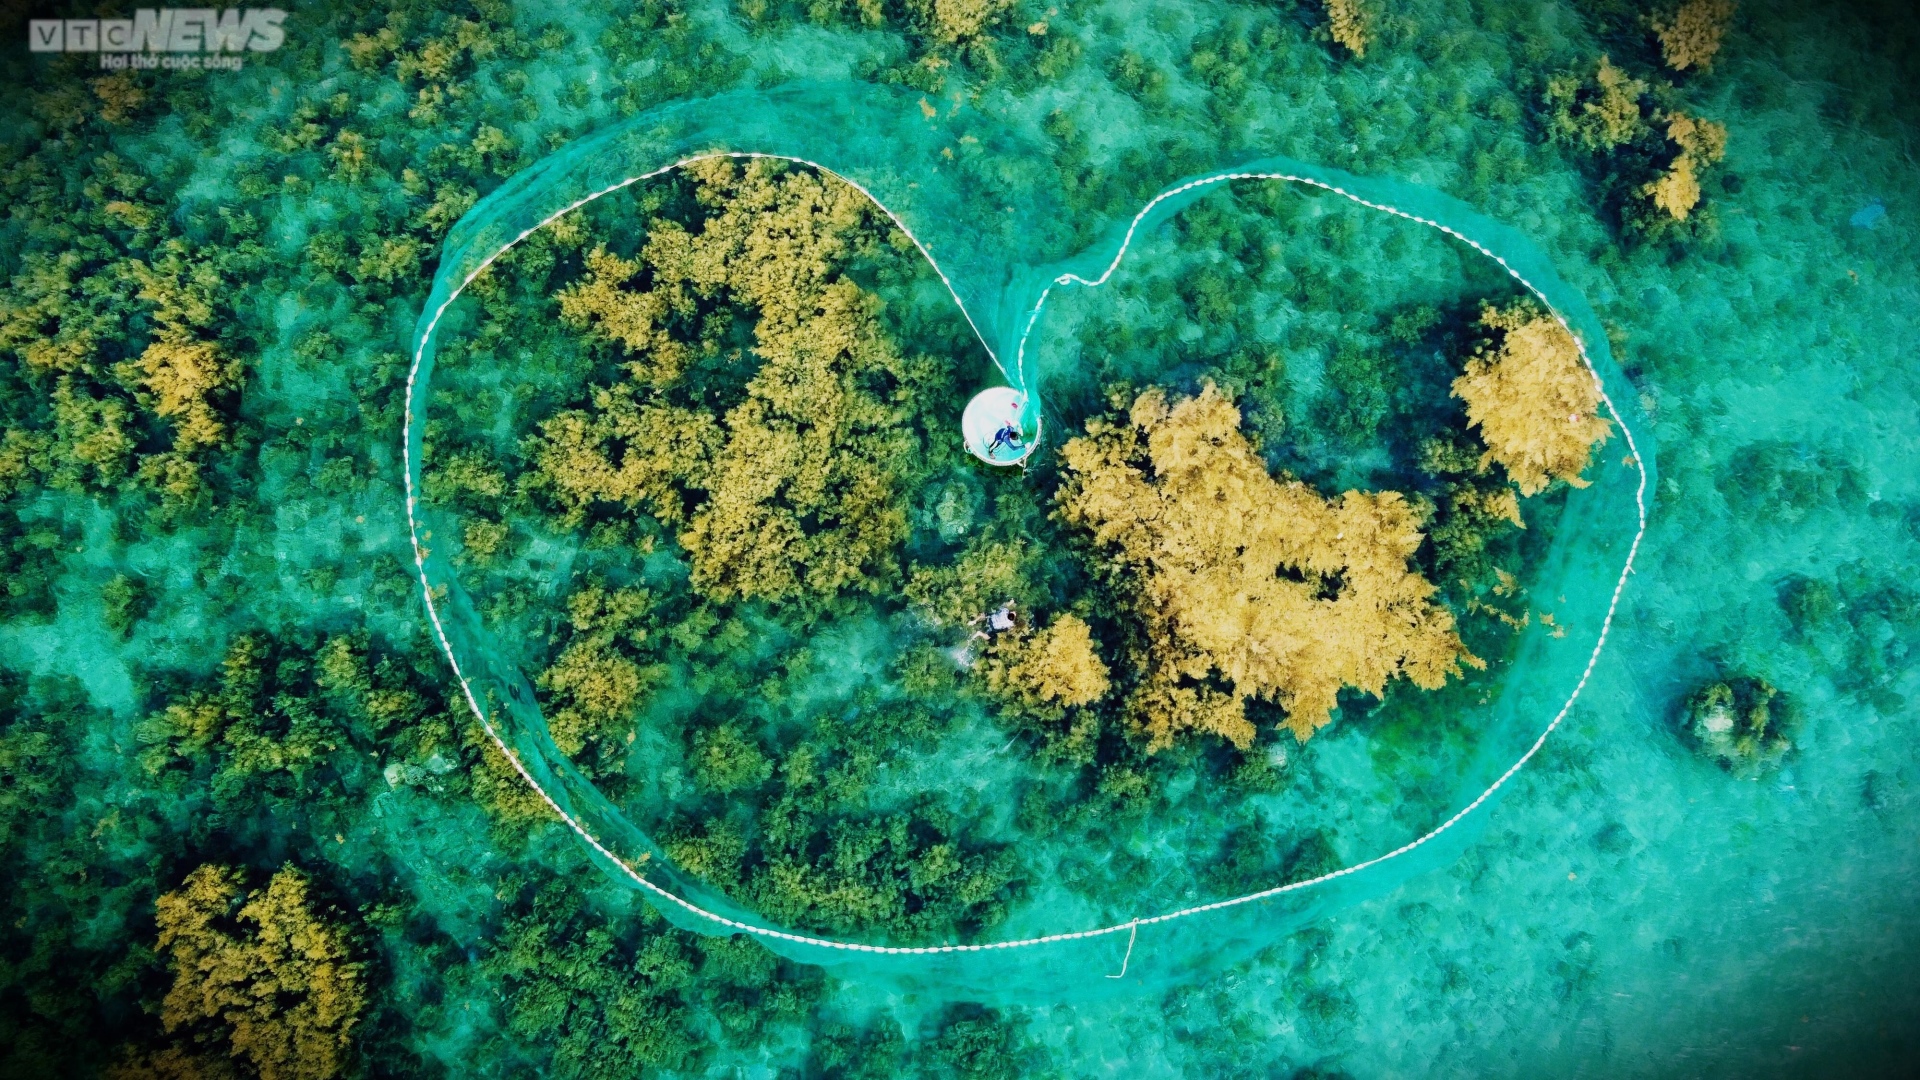 Ngất ngây 'cánh đồng vàng' dưới biển xanh trong ở đảo Hòn Khô, Bình Định - Ảnh 7.